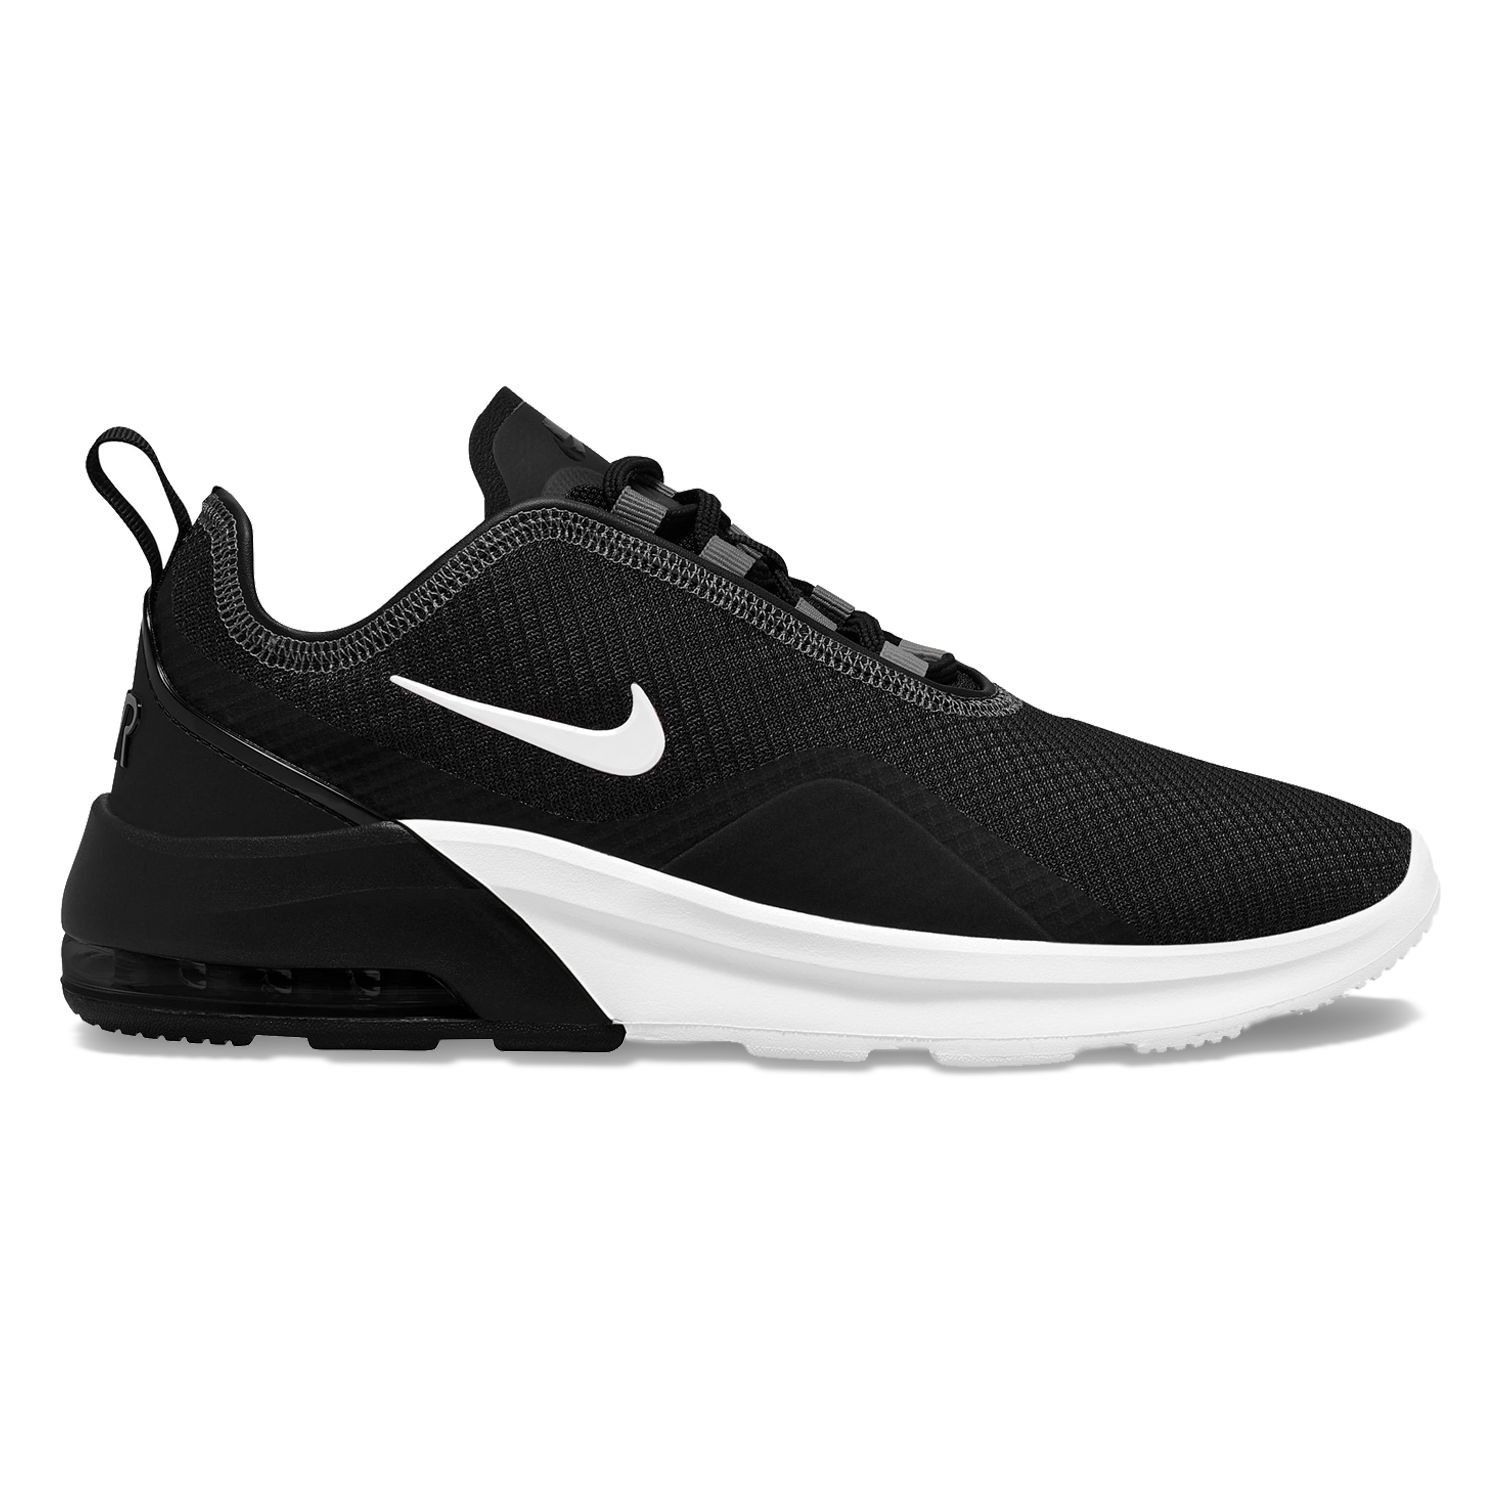 Black Nike Shoes | Black Nikes | Kohl's